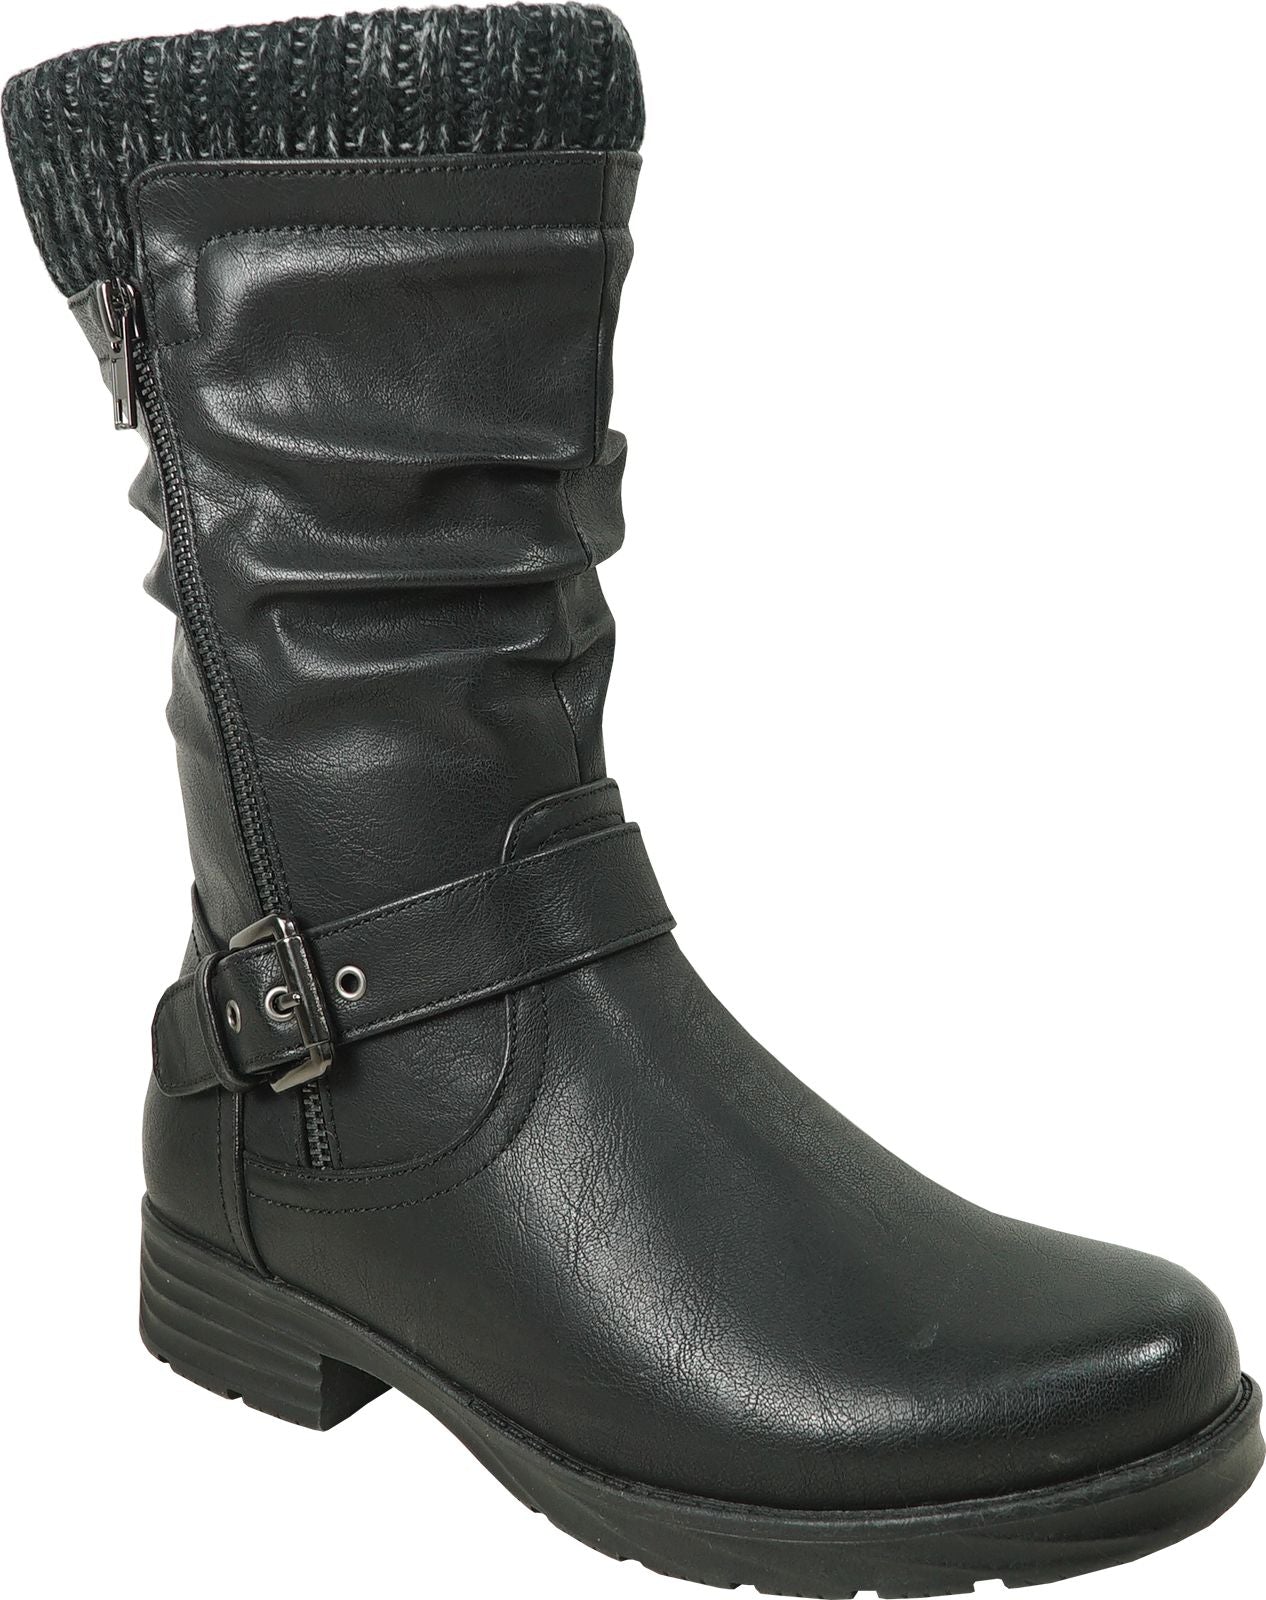 Vangelo Boots Hf0601 Black